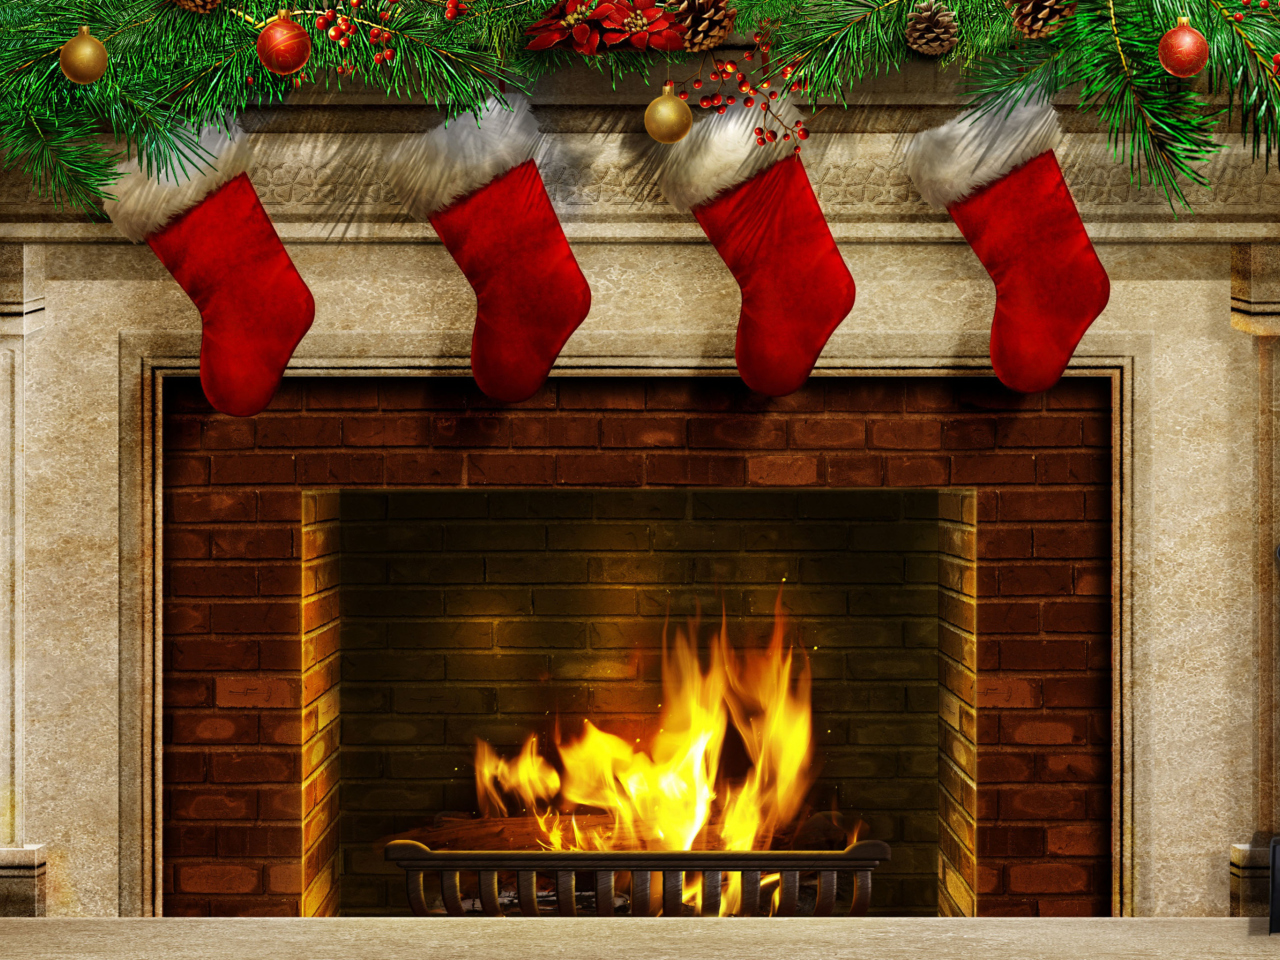 Fireplace And Christmas Socks wallpaper 1280x960